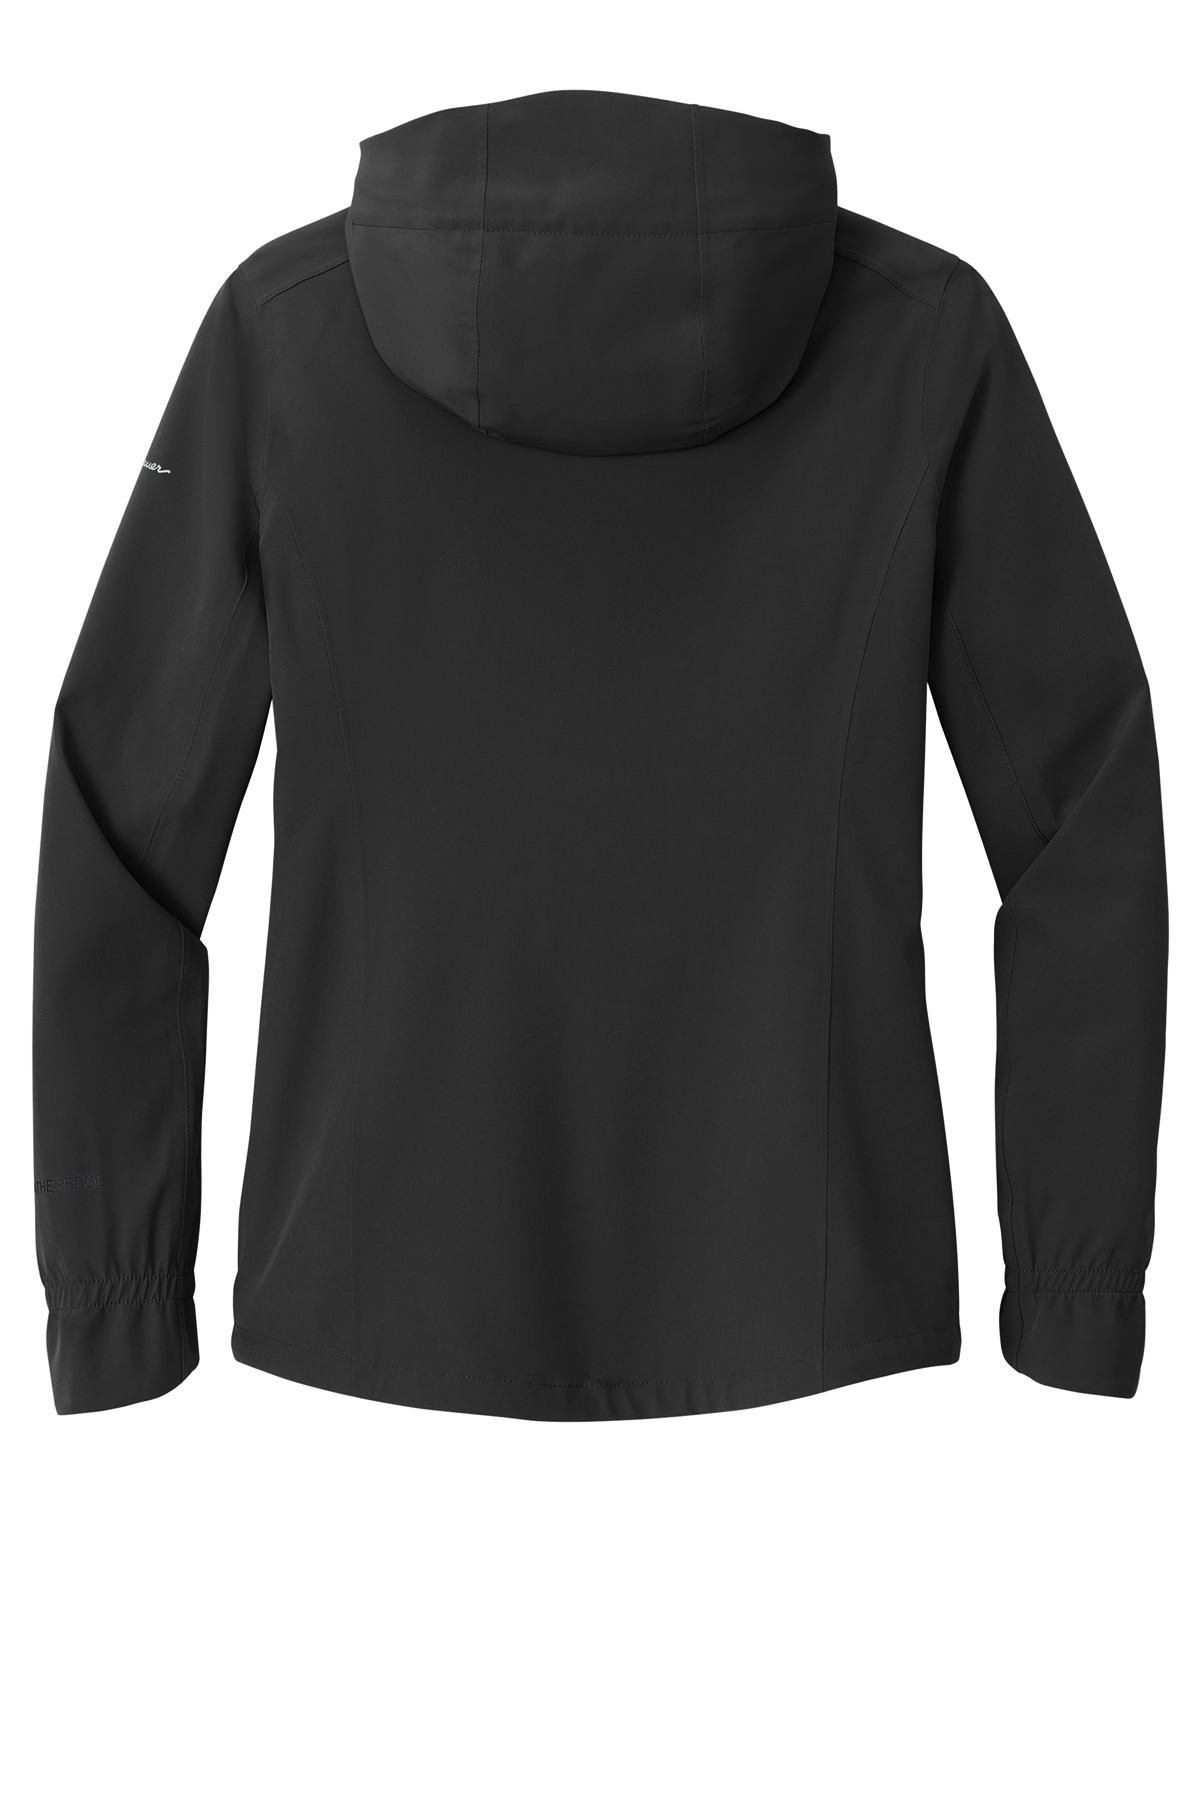 Eddie Bauer Ladies WeatherEdge Plus Jacket | Product | SanMar